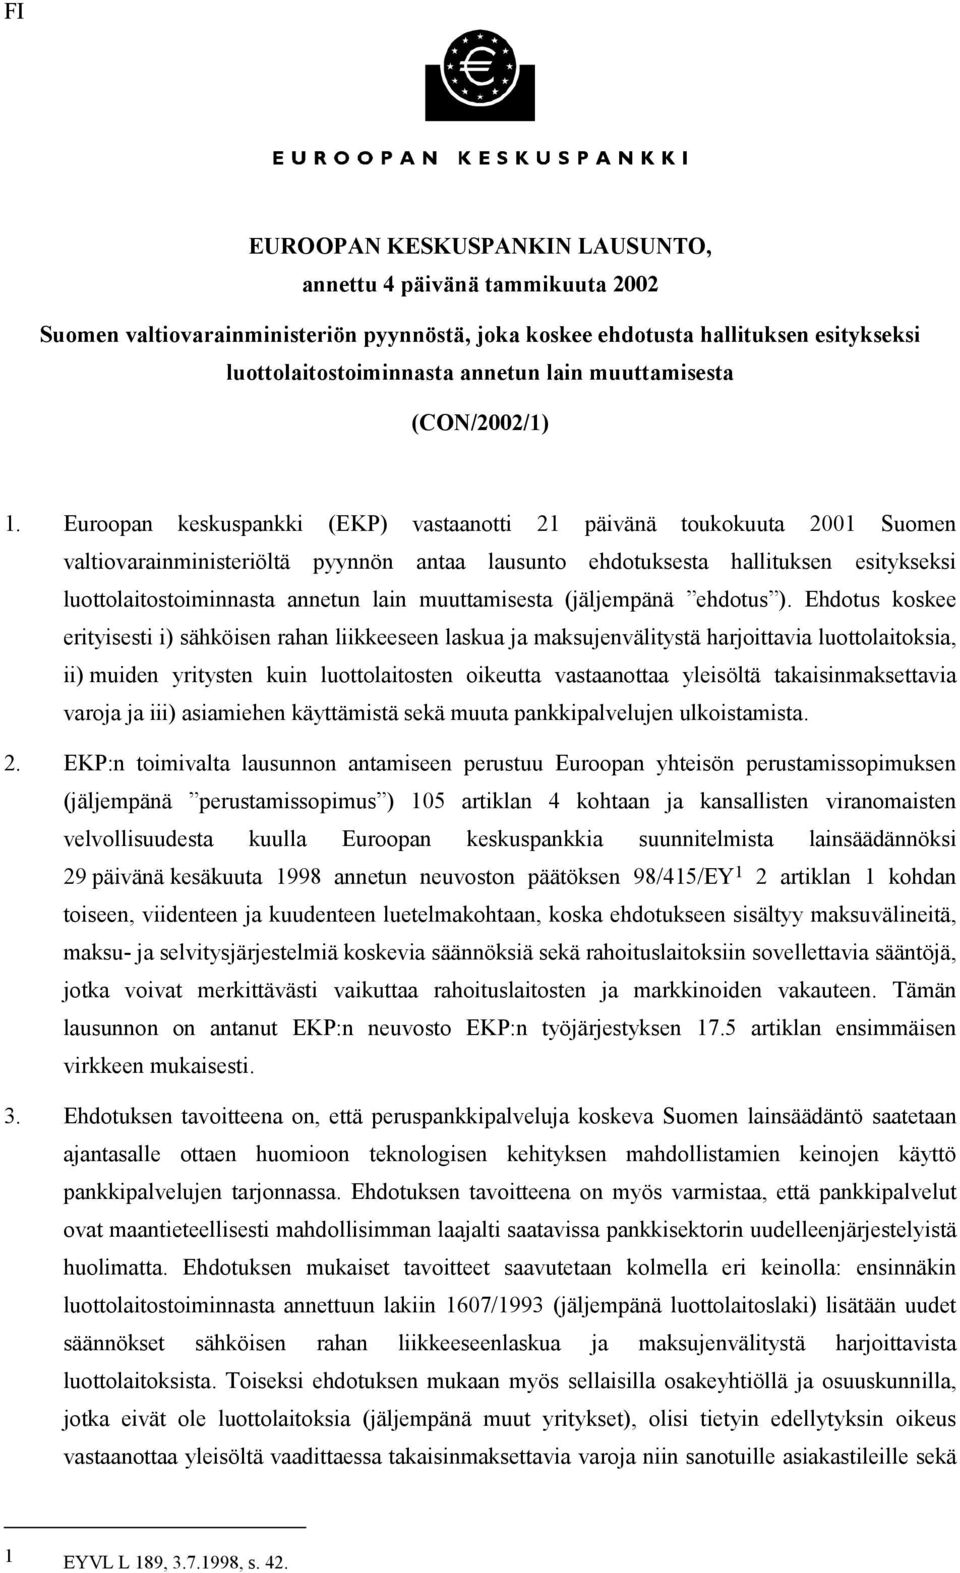 Euroopan keskuspankki (EKP) vastaanotti 21 päivänä toukokuuta 2001 Suomen valtiovarainministeriöltä pyynnön antaa lausunto ehdotuksesta hallituksen esitykseksi luottolaitostoiminnasta annetun lain